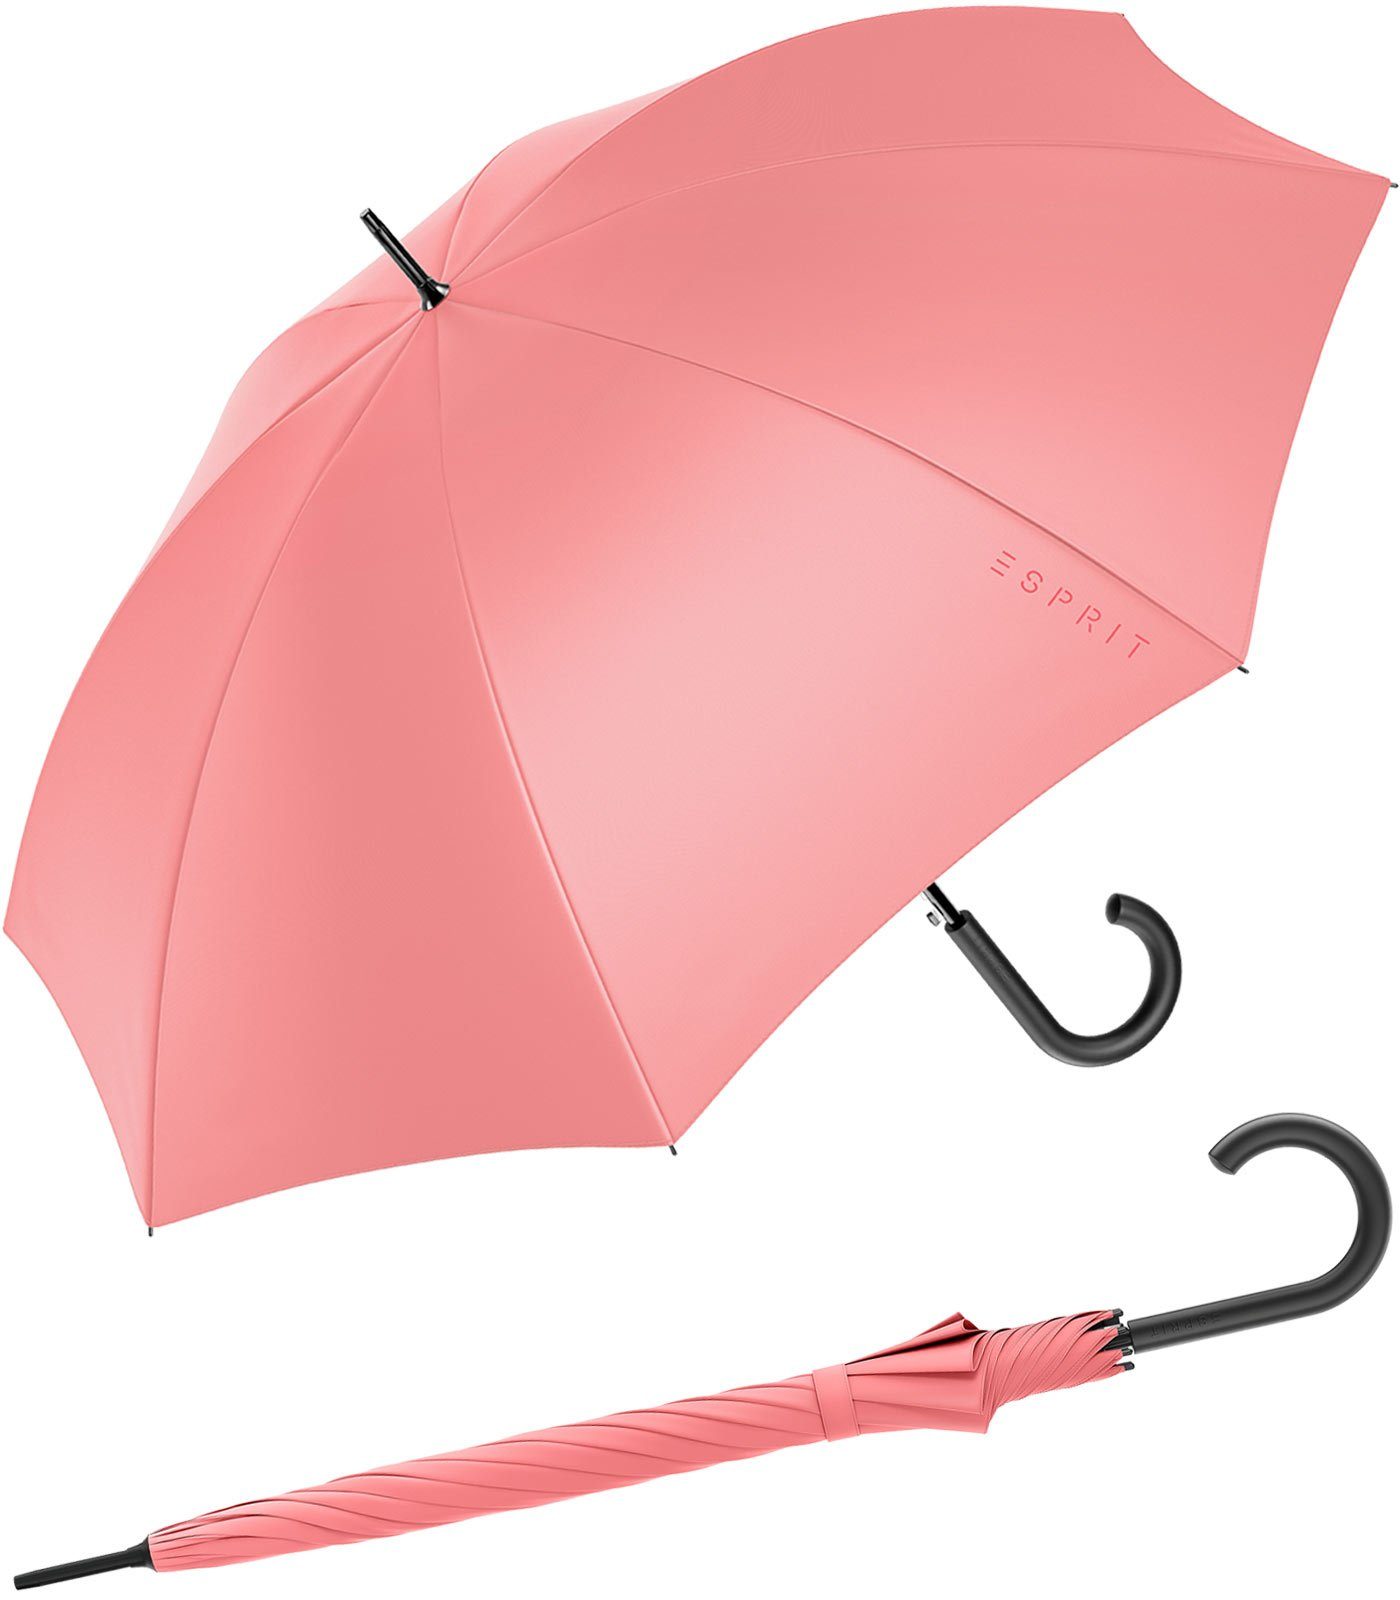 Esprit Stockregenschirm Damen-Regenschirm mit Automatik FJ 2022, groß und stabil, in den Trendfarben koralle